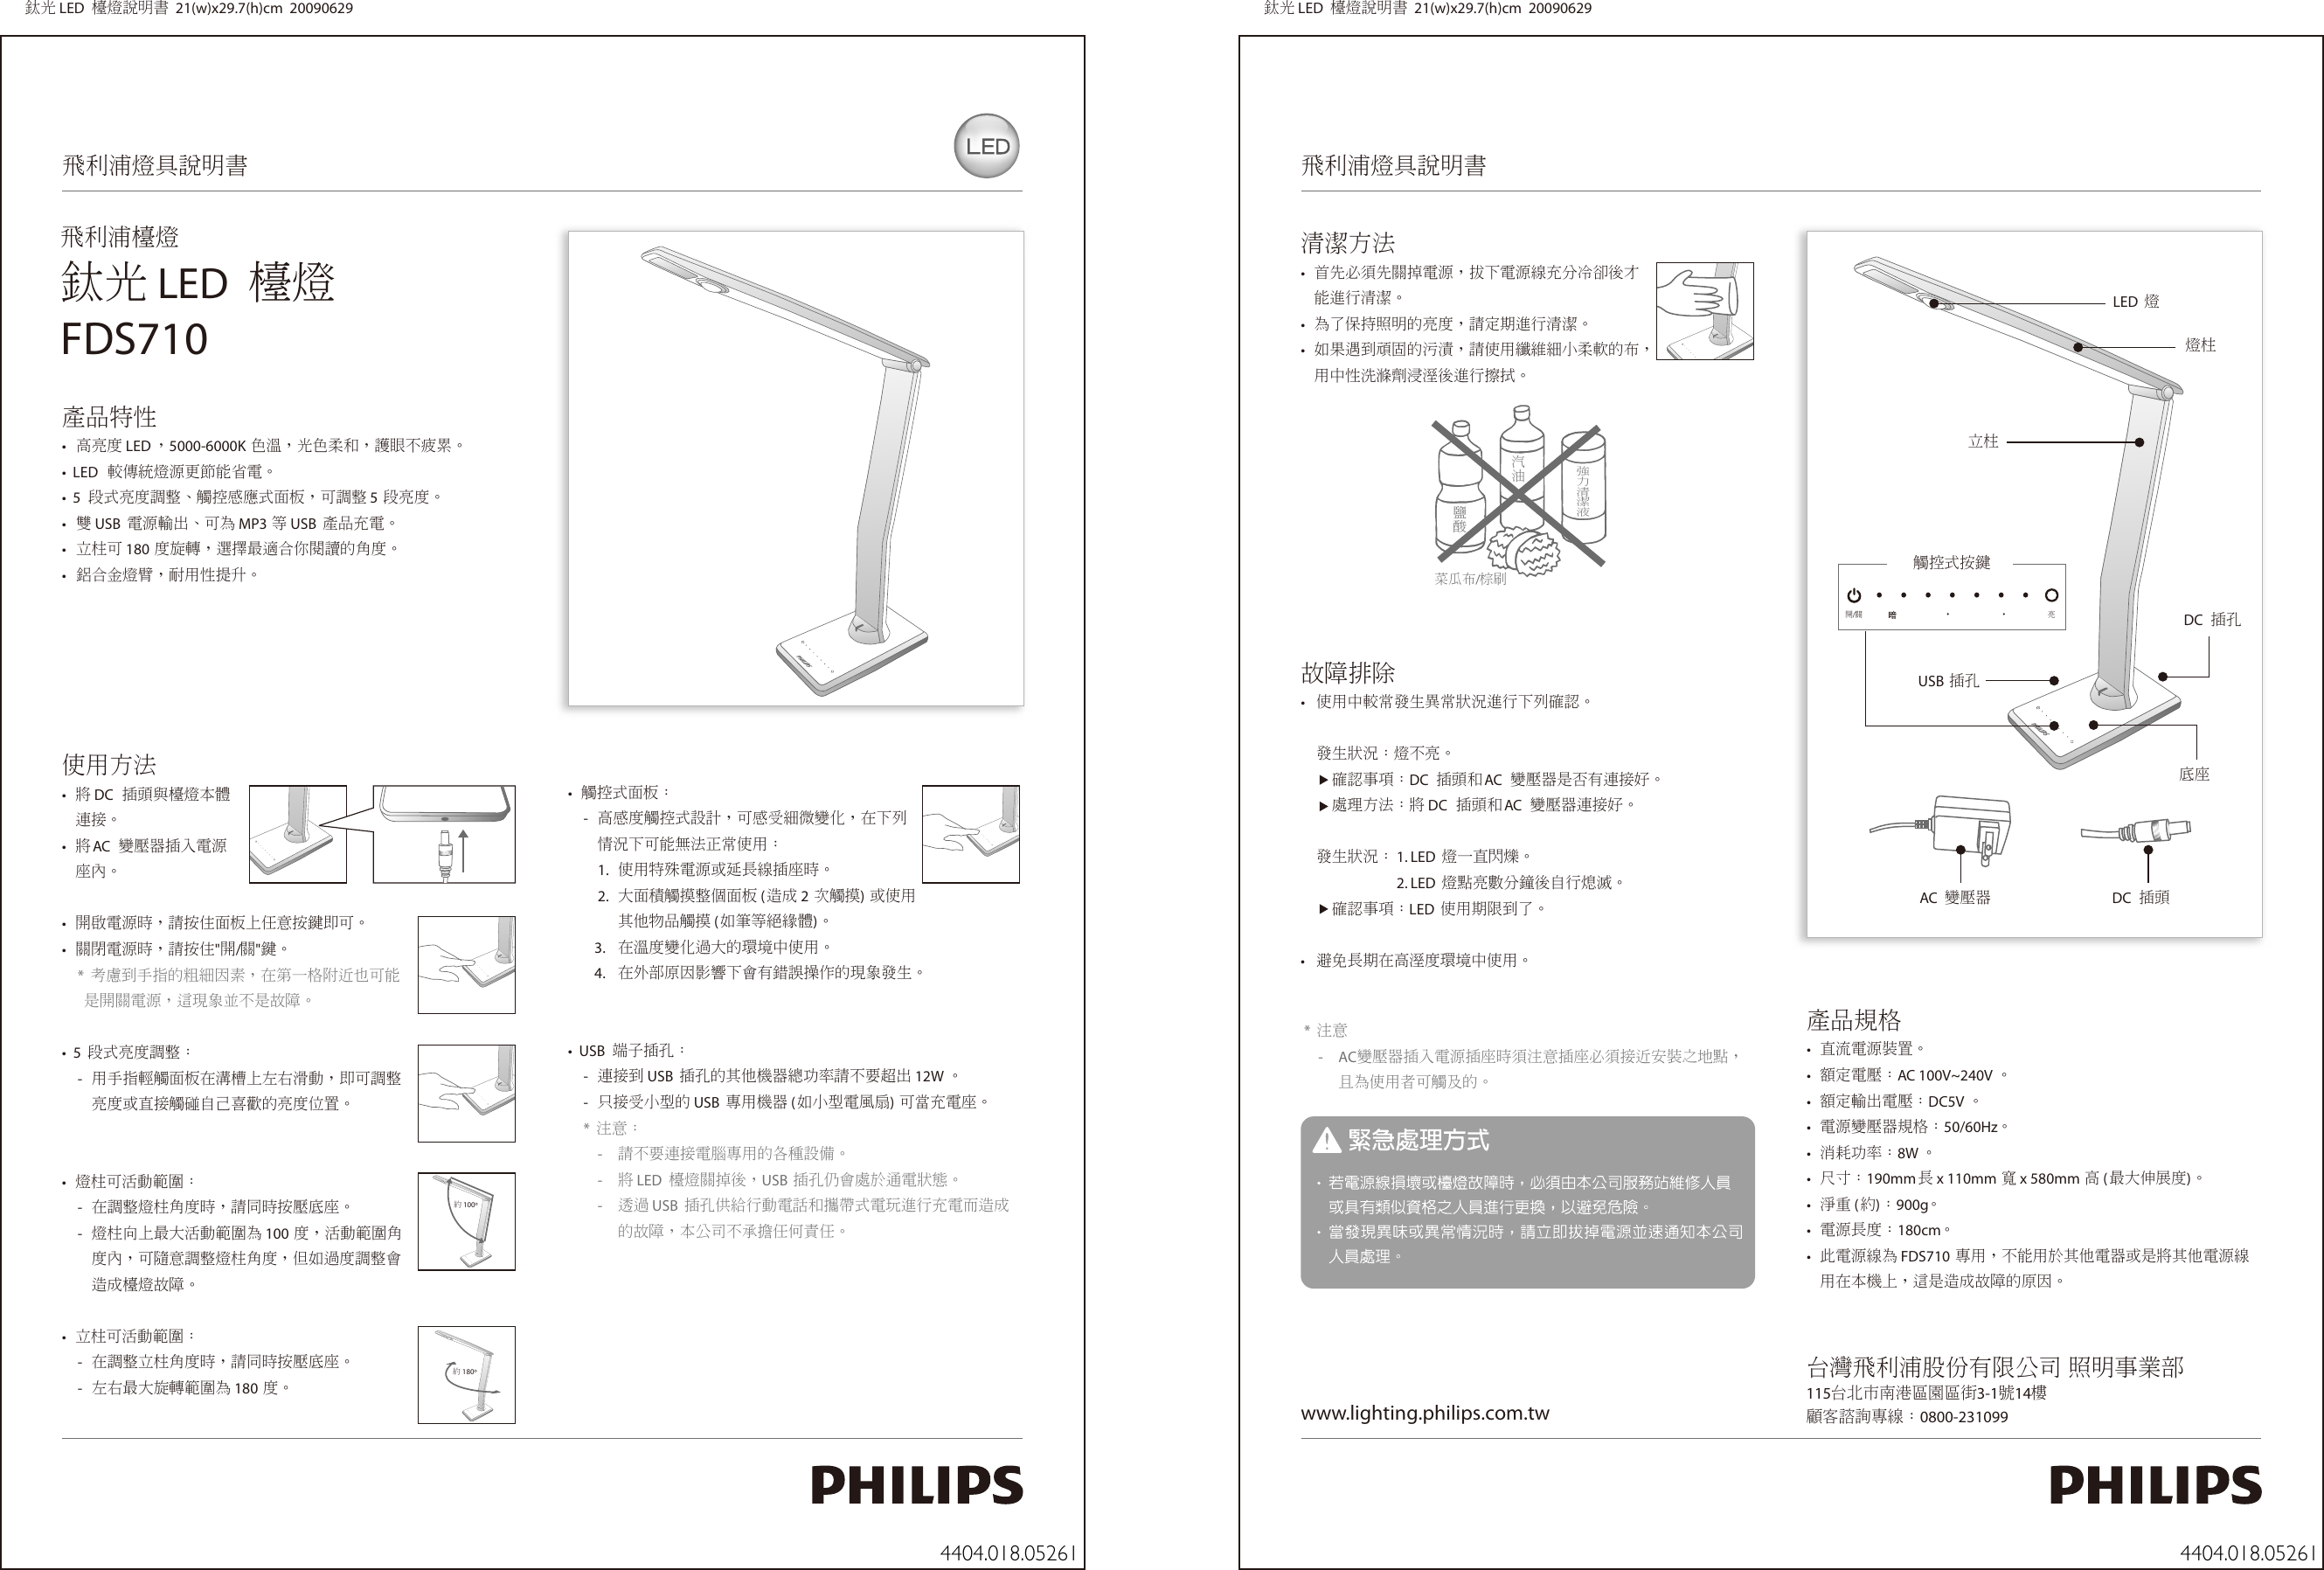 Page 1 of 1 - Philips 69195/31/56 440401805261 使用手册 使用手冊 691953156 Dfu Zht